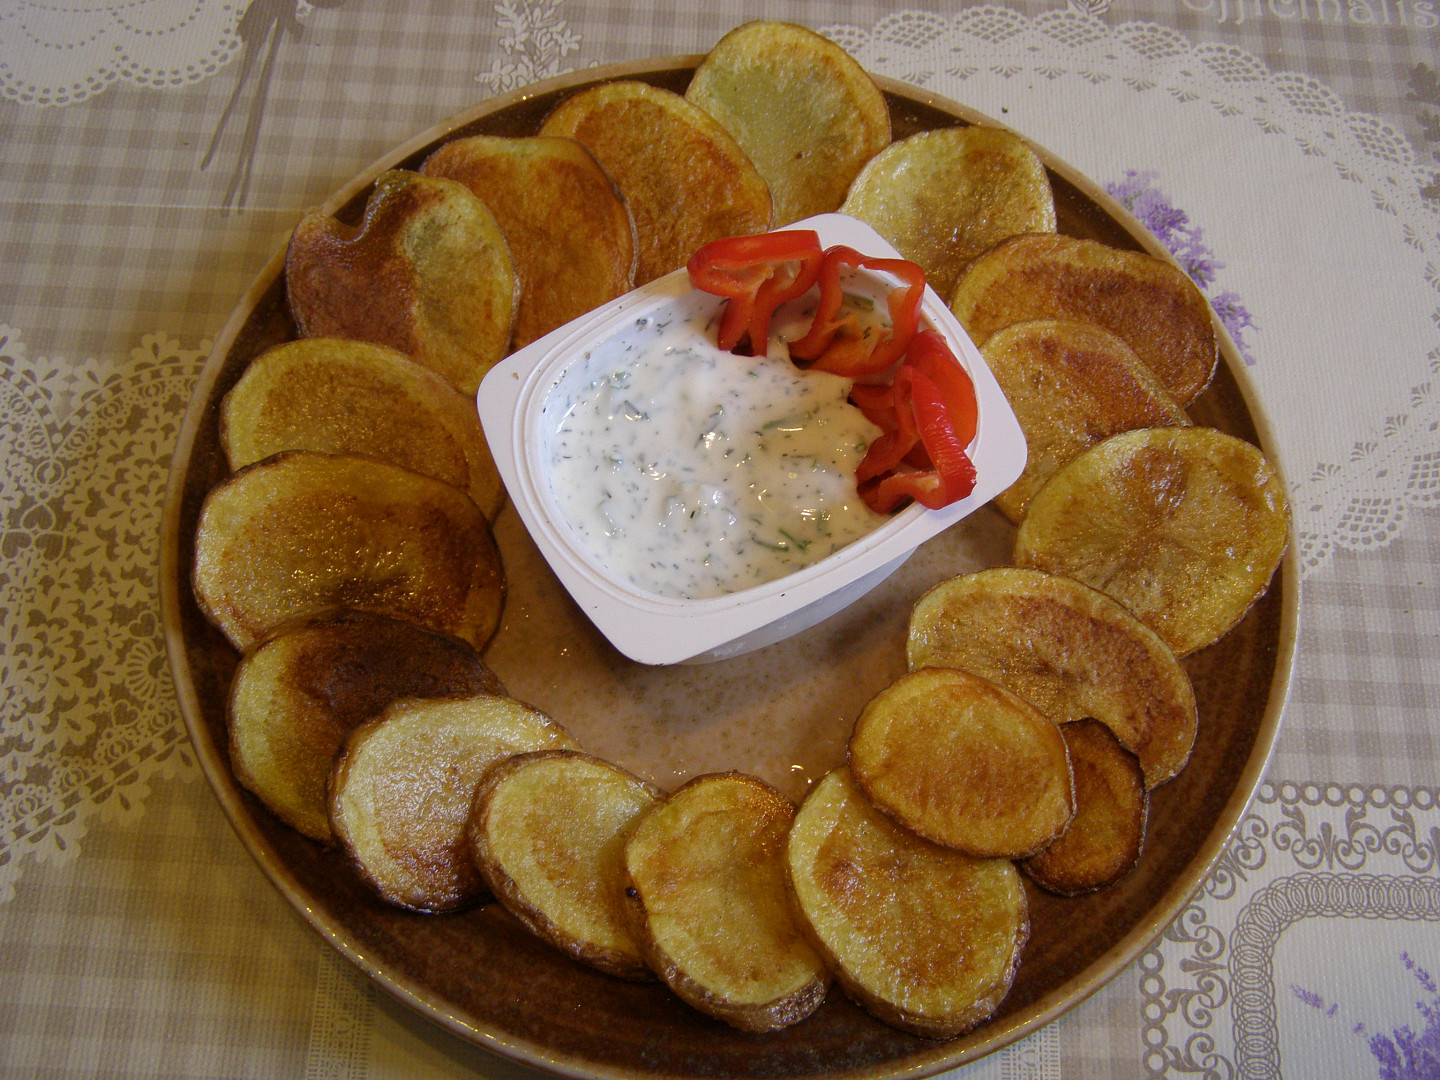 Opečené brambory s bylinkovým dipem